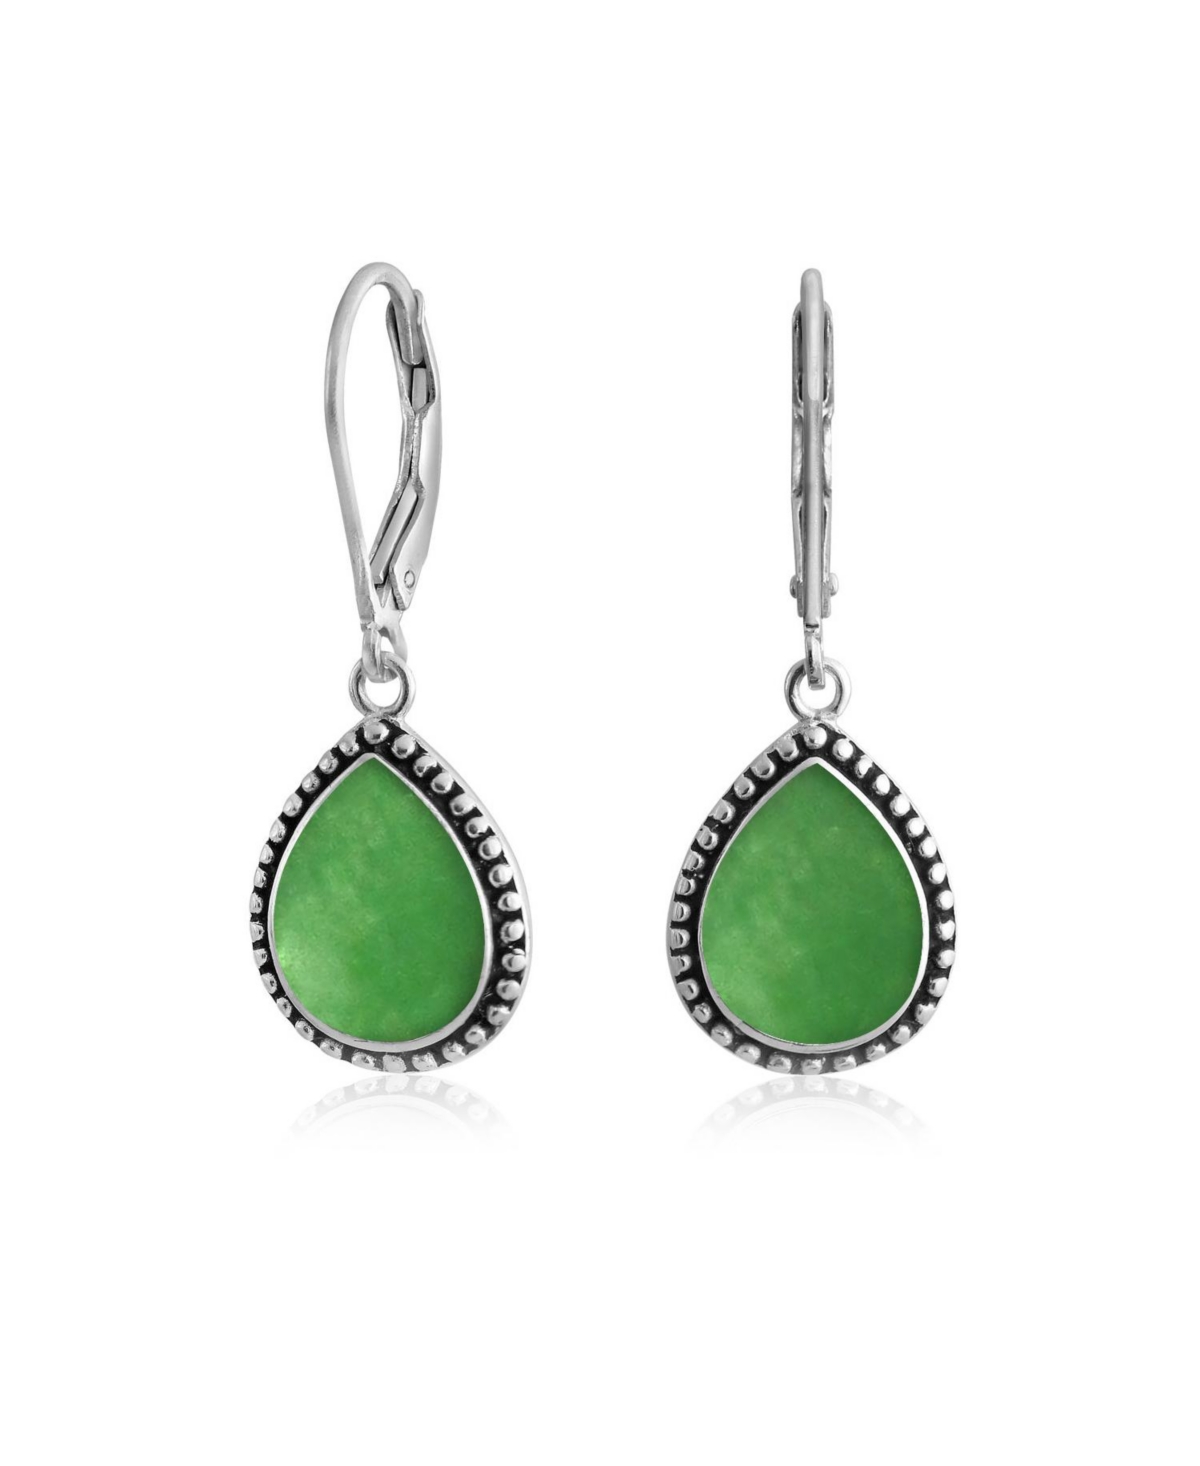 Boho Western Style Green Dyed Jade Semi Precious Pear Shaped Teardrop Lever Back Dangle Drop Earrings For Women Teen Oxidized .925 Sterl